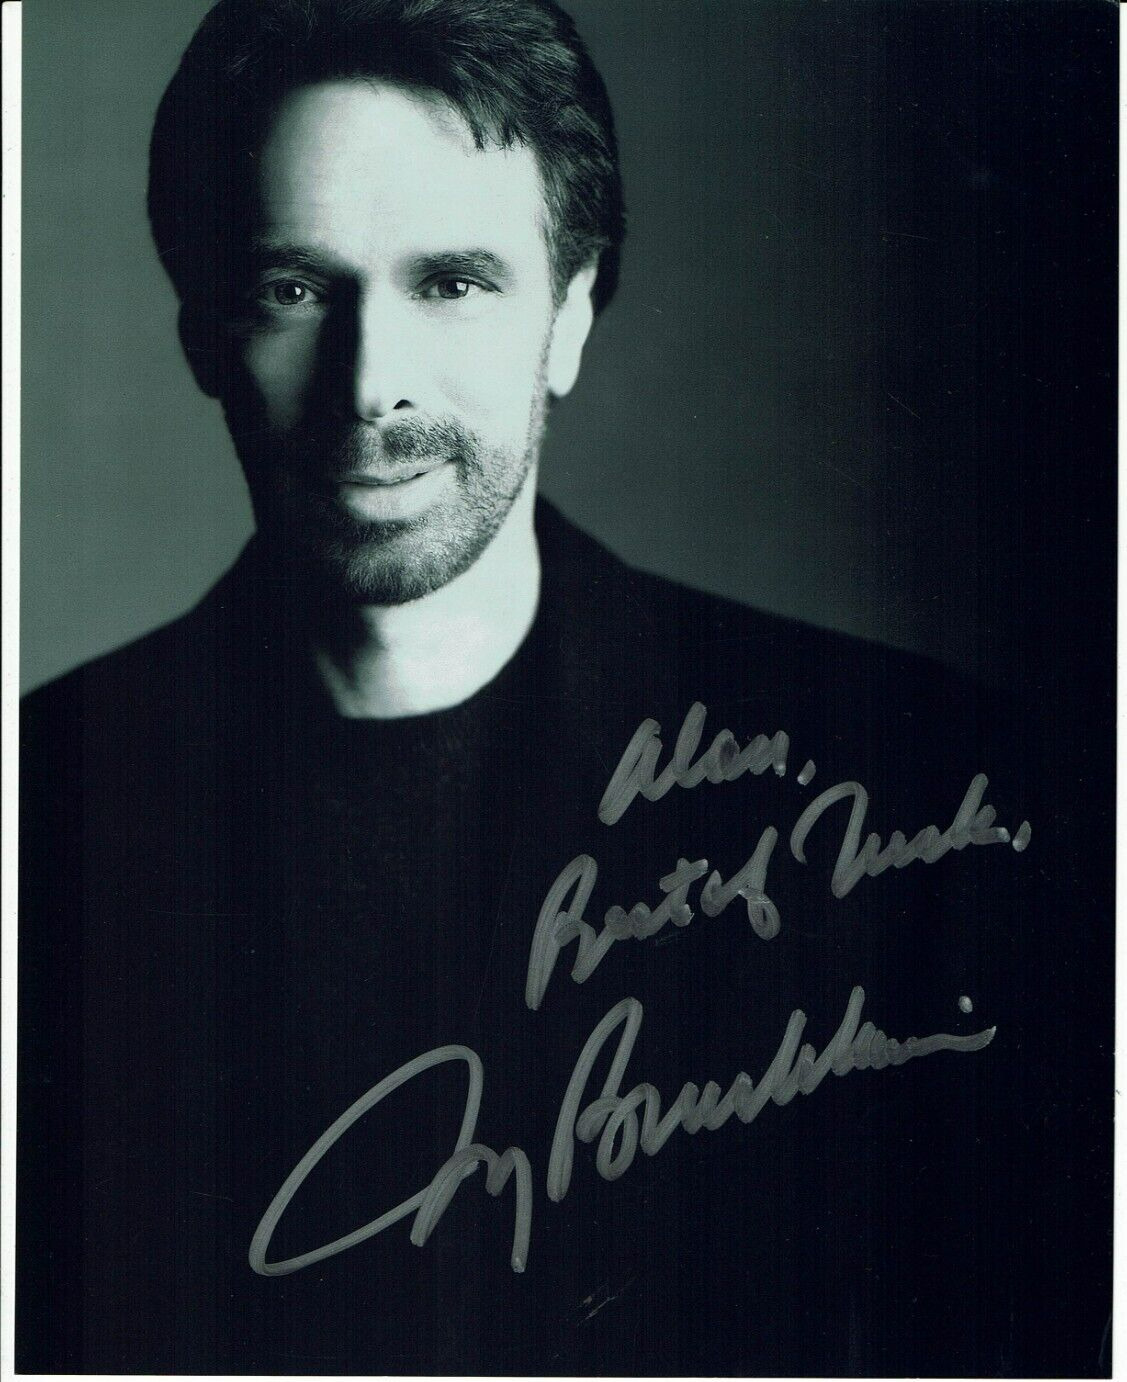 Jerry Bruckheimer Hand Signed Photograph 10 x 8